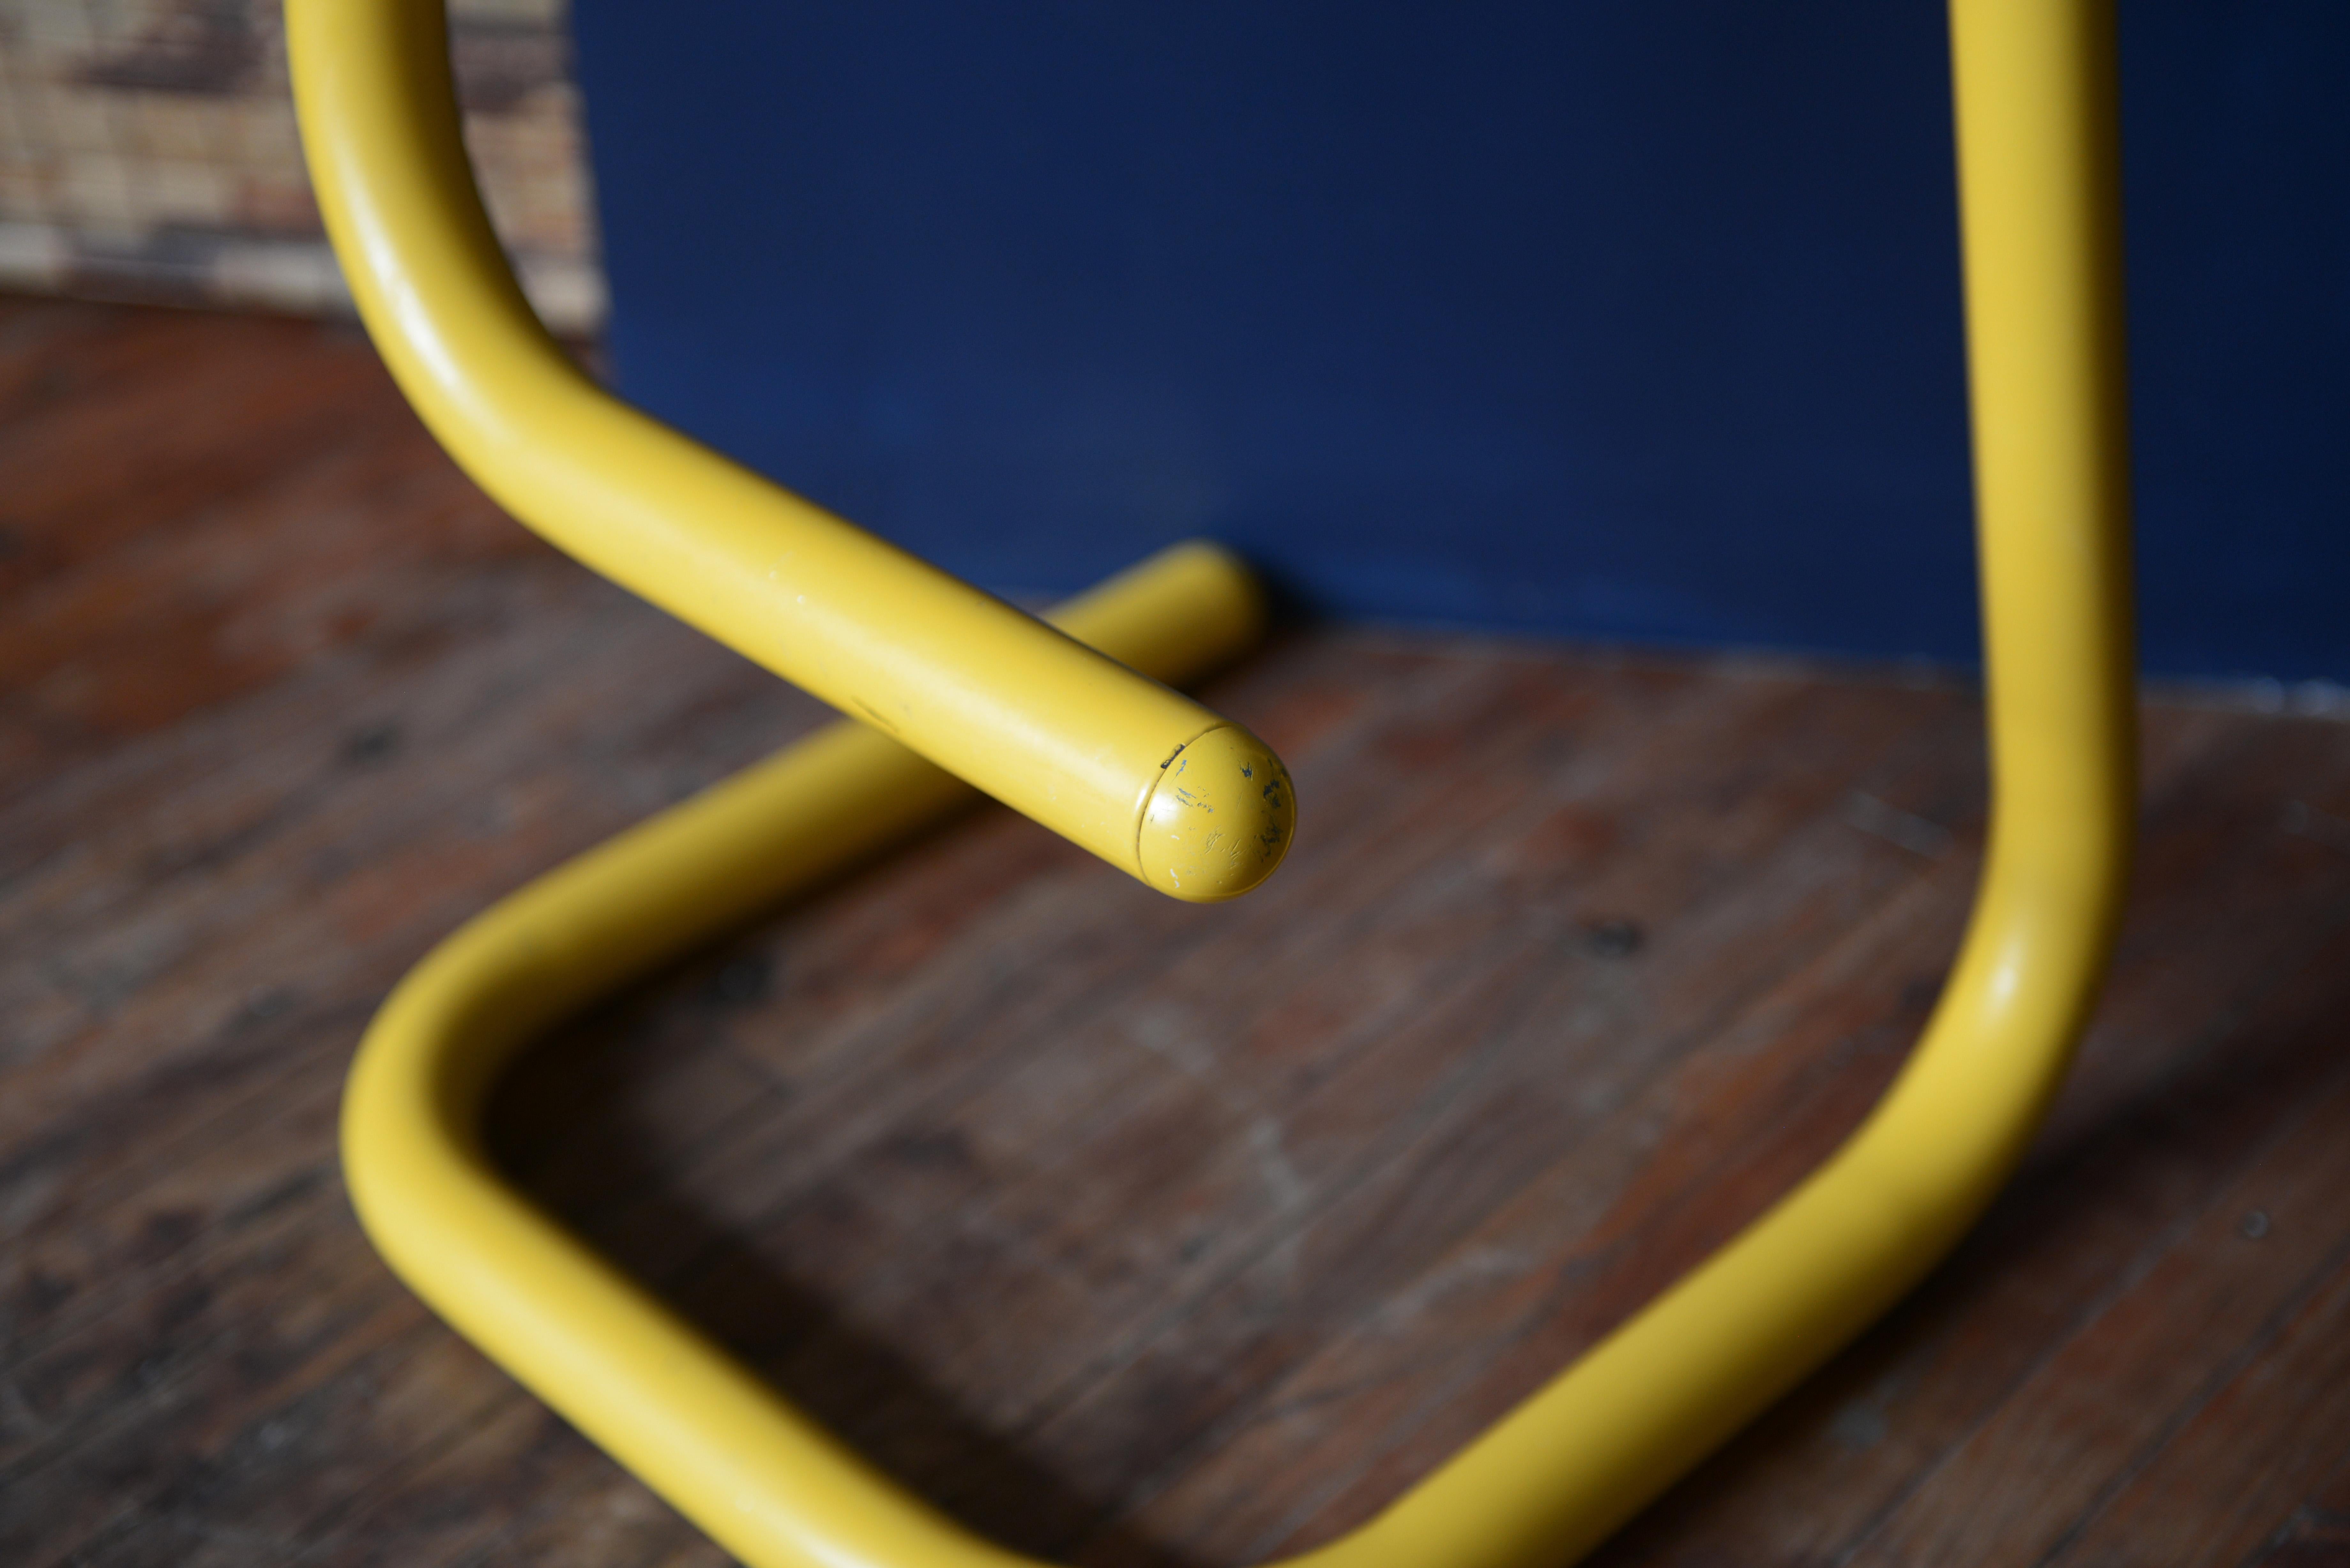 amisco paperclip stools